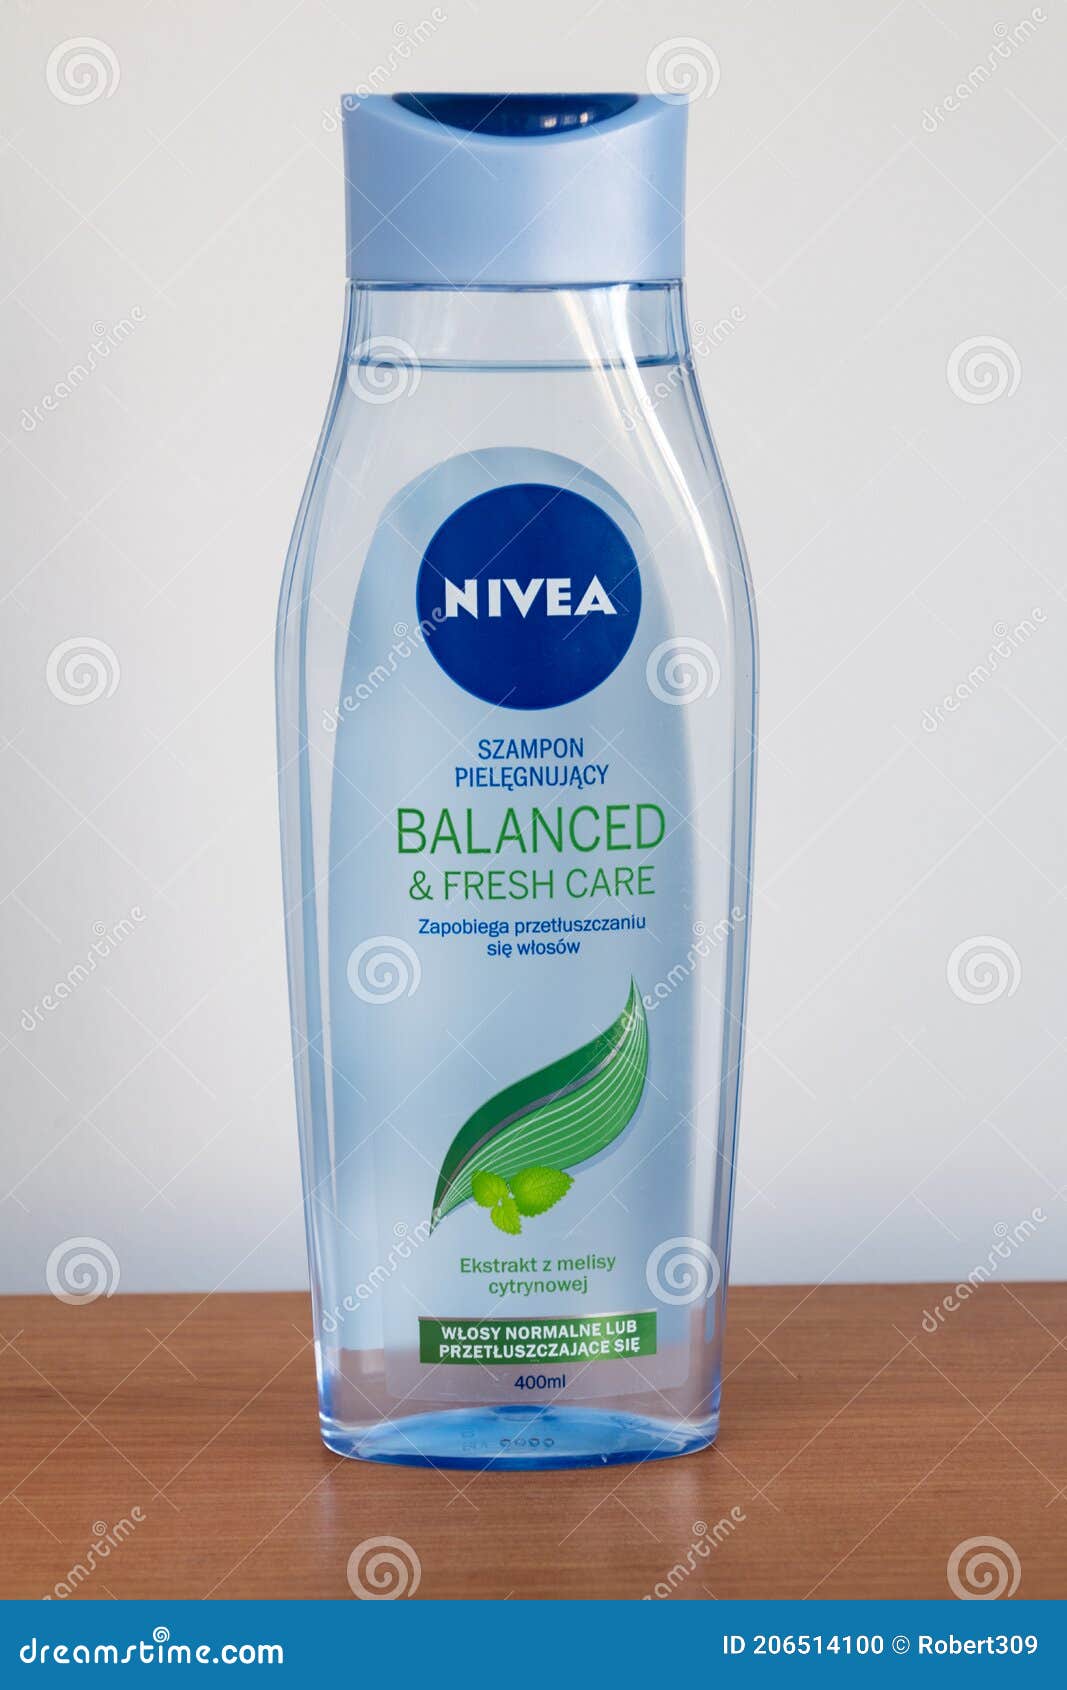 nivea balanced & fresh care szampon pielęgnujący 400 ml